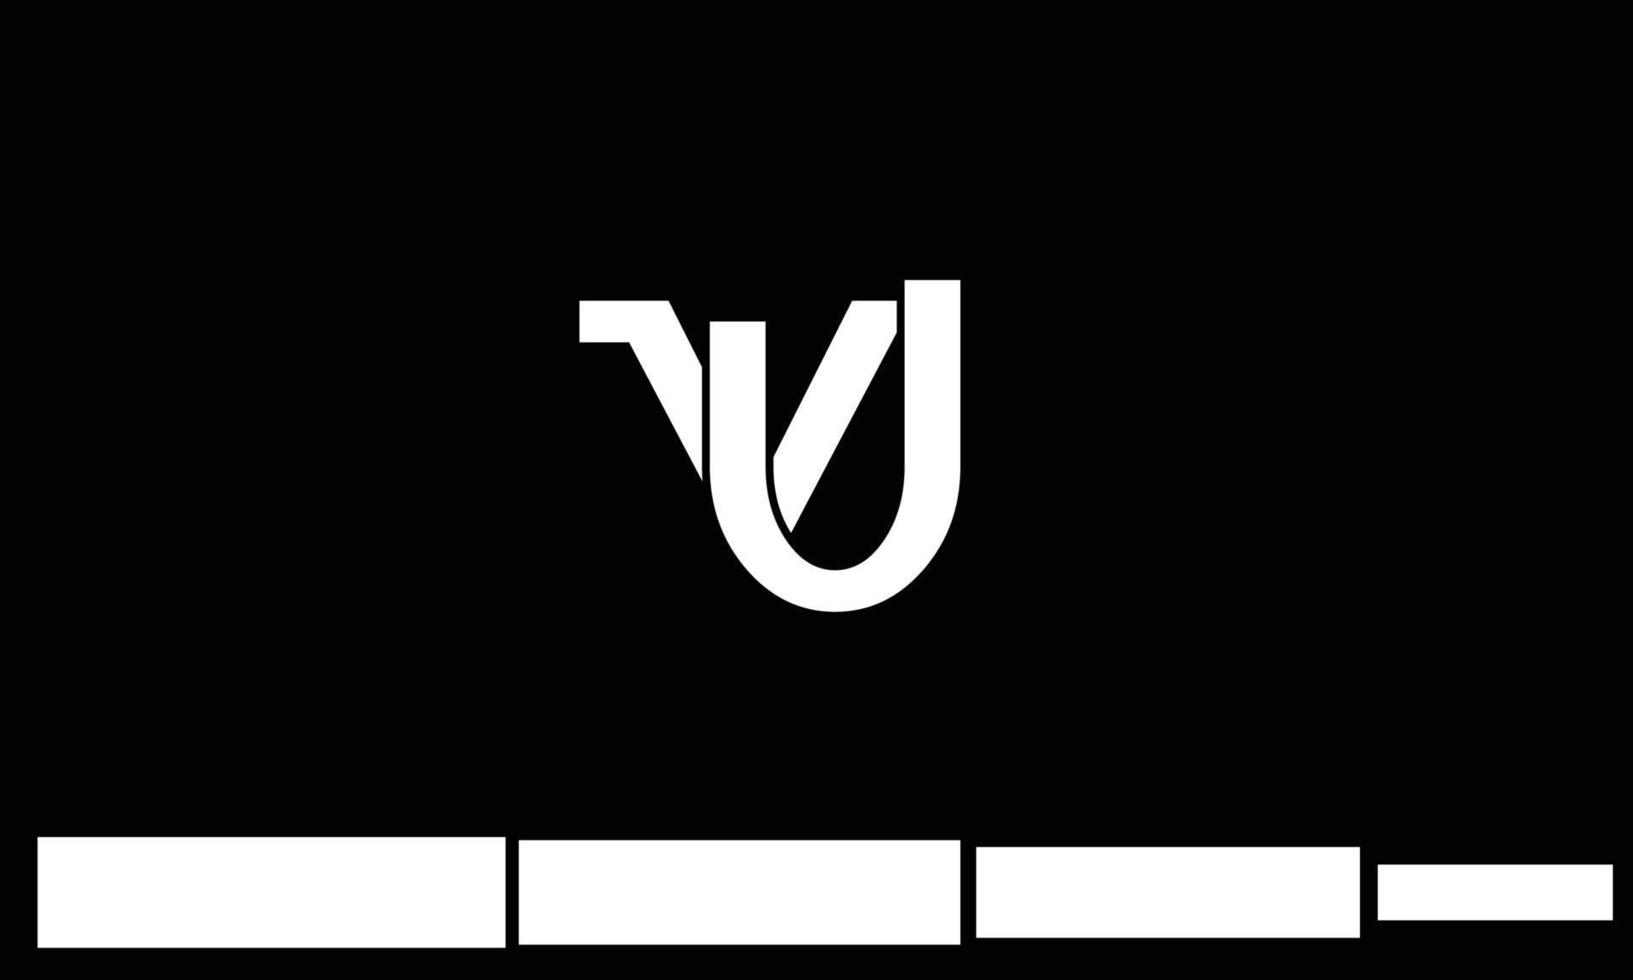 alfabeto lettere iniziali monogramma logo vu, uv, v e u vettore